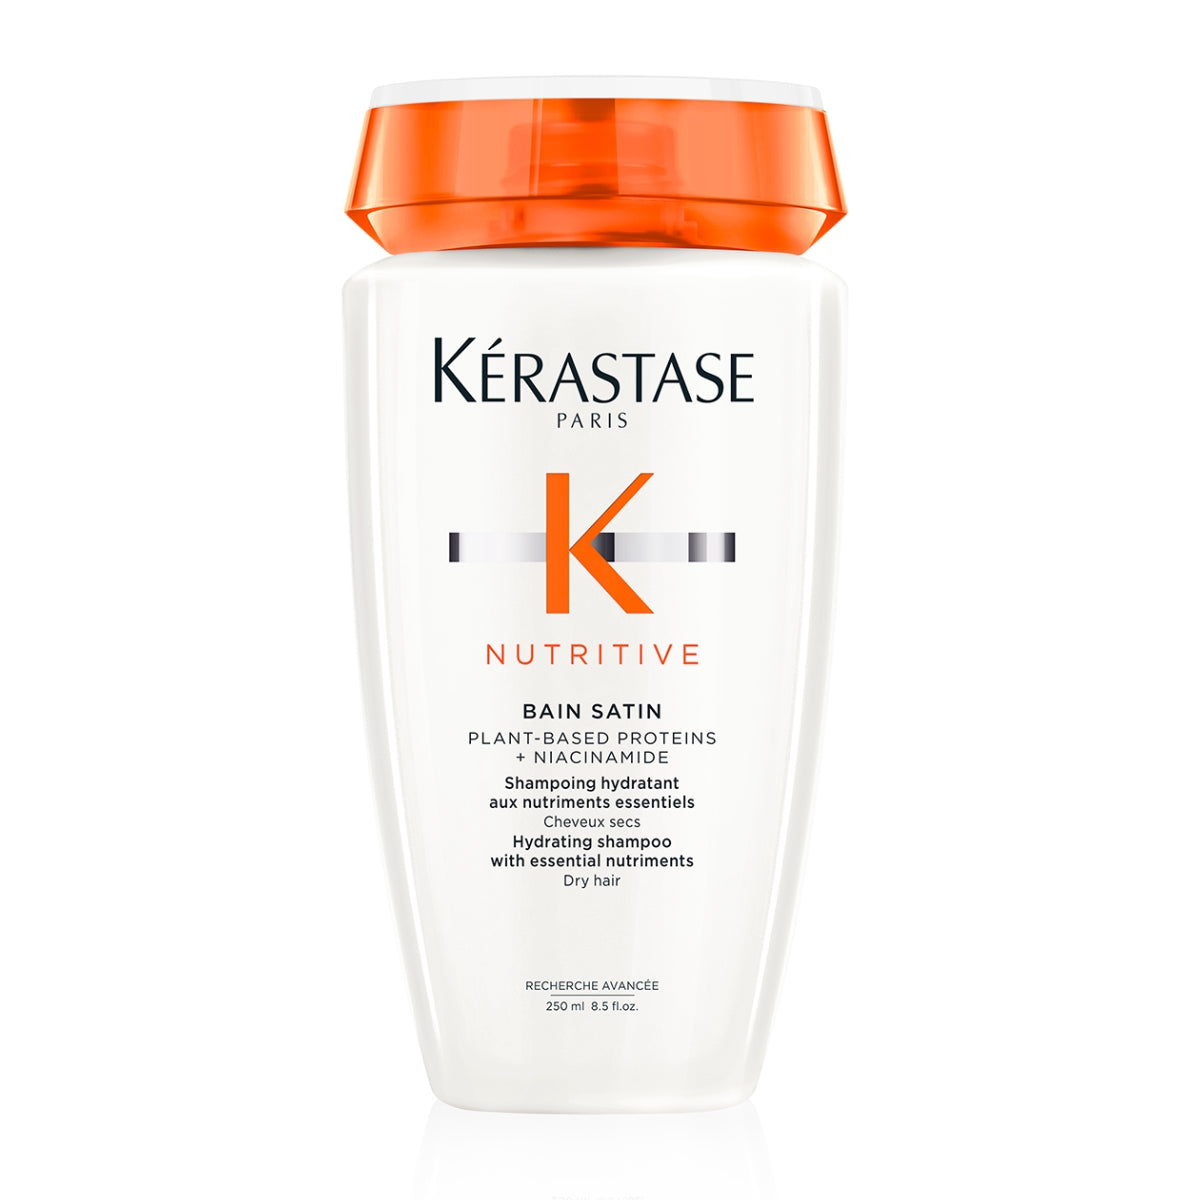 Kérastase Nutritive Bain Satin Hydrating Shampoo With Niacinamide For Dry Hair 